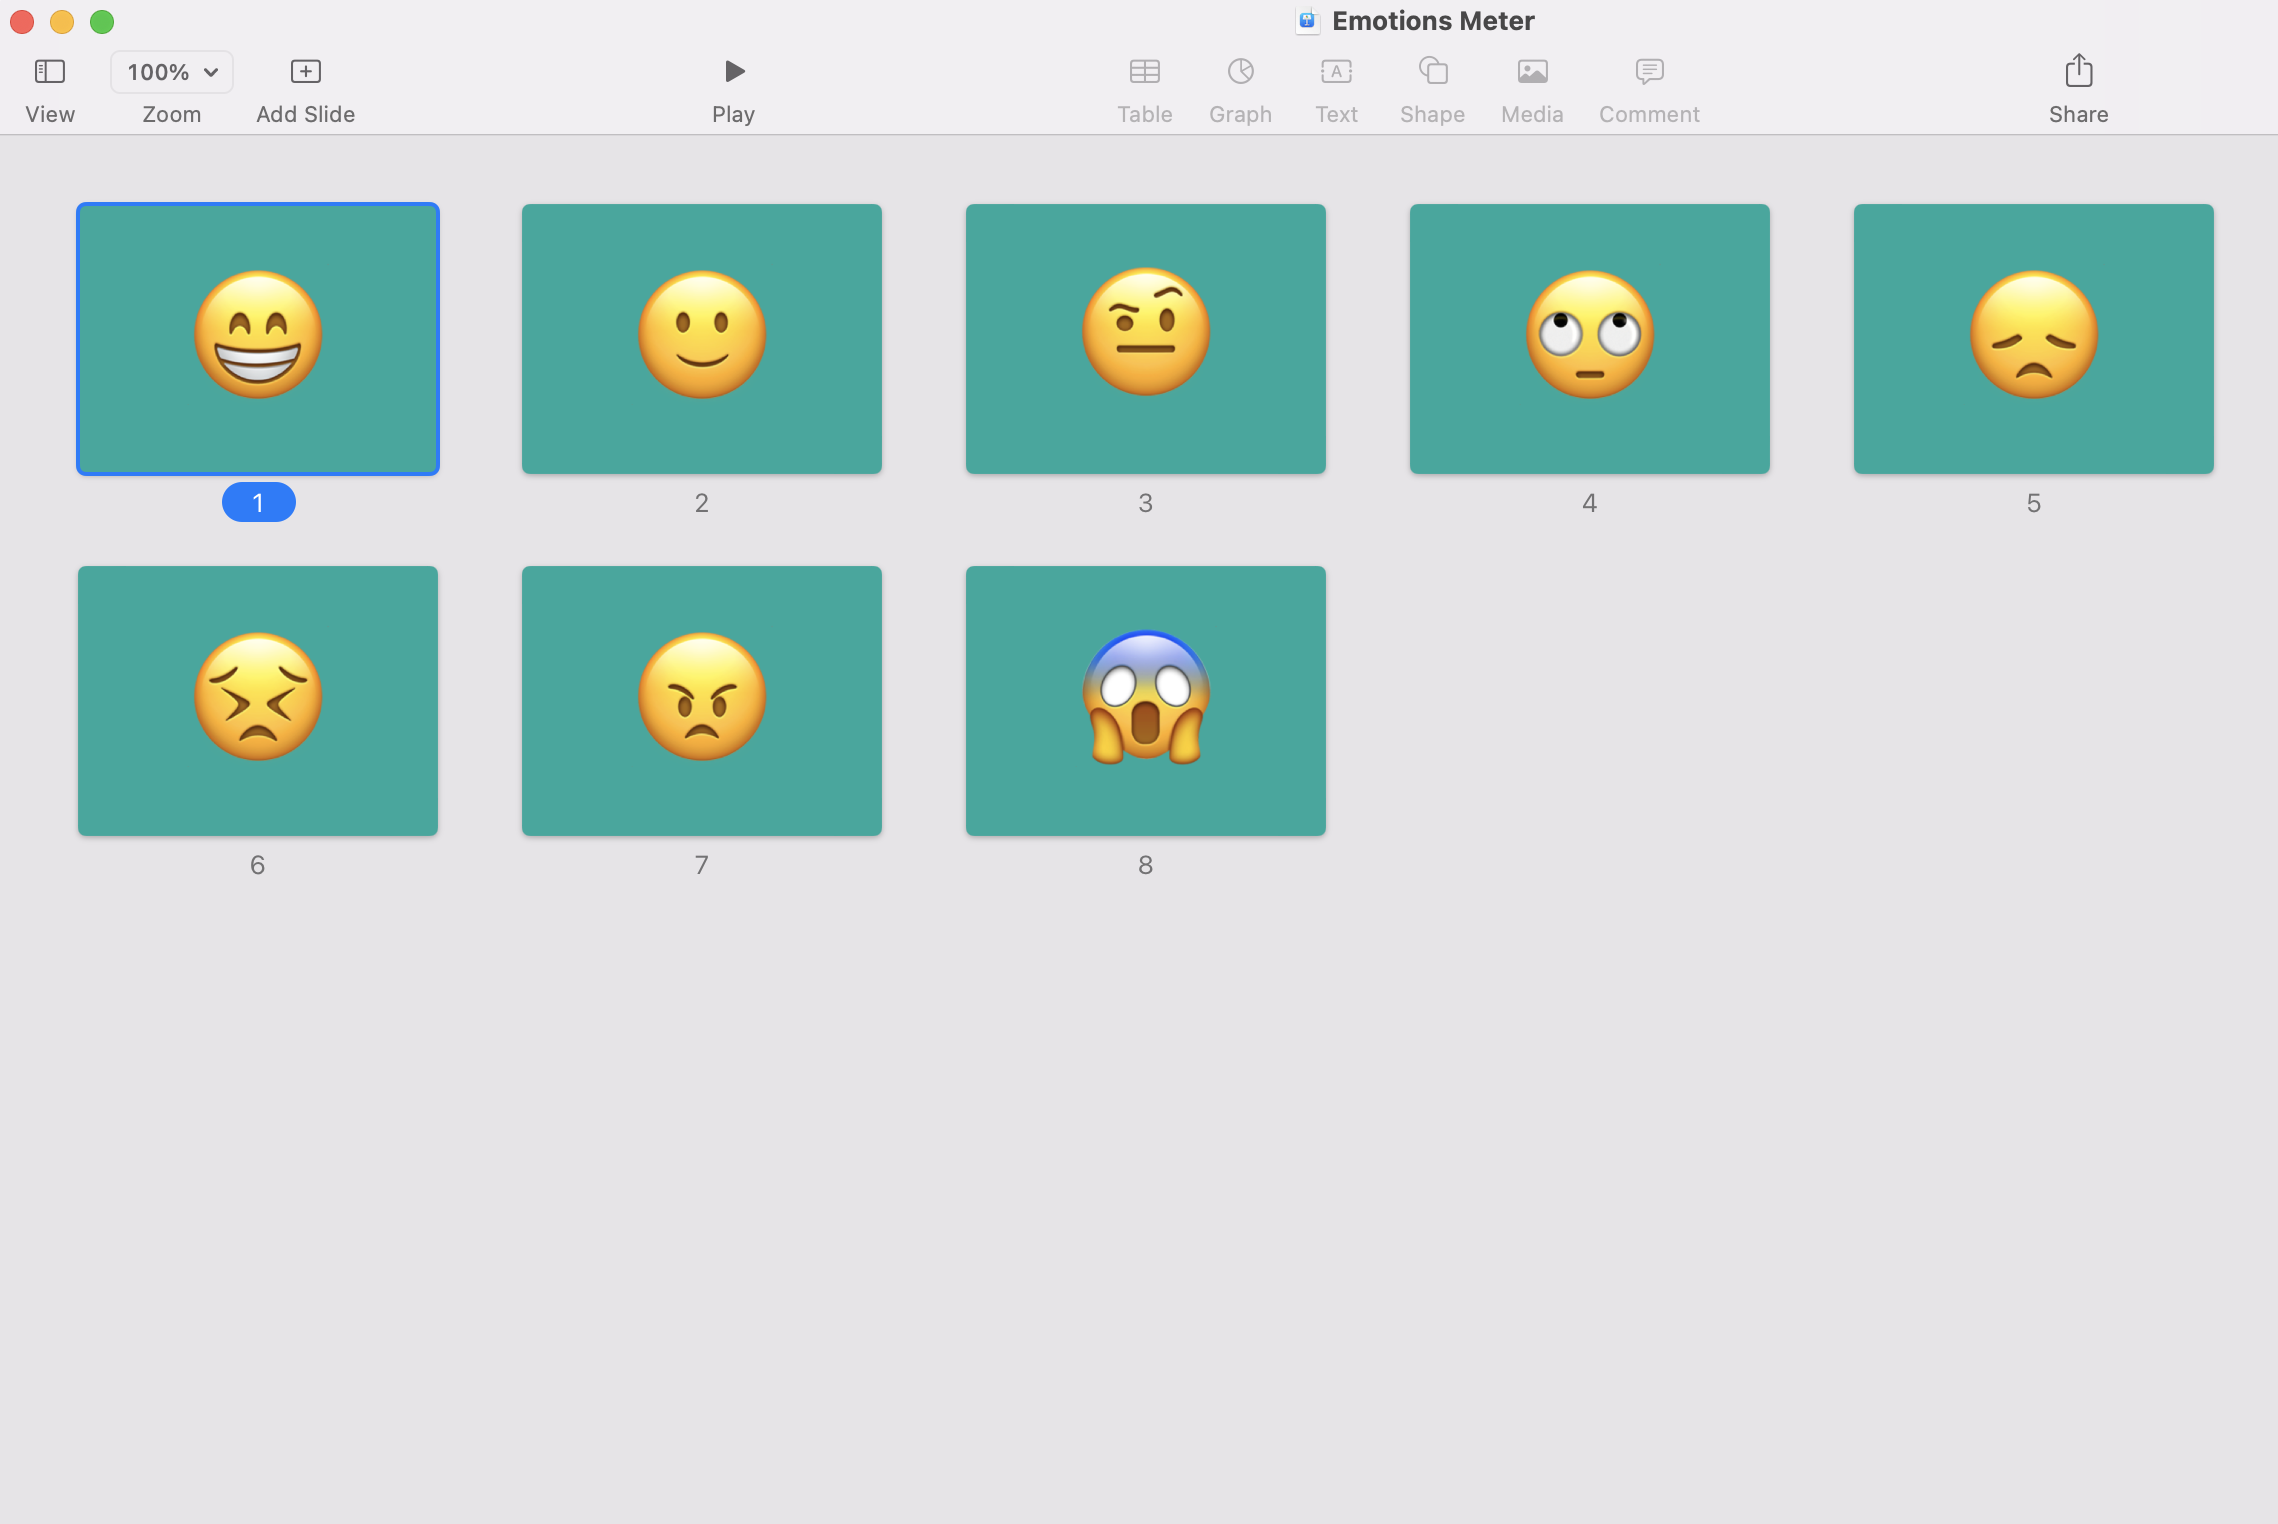 Keynote slide deck with emoji images